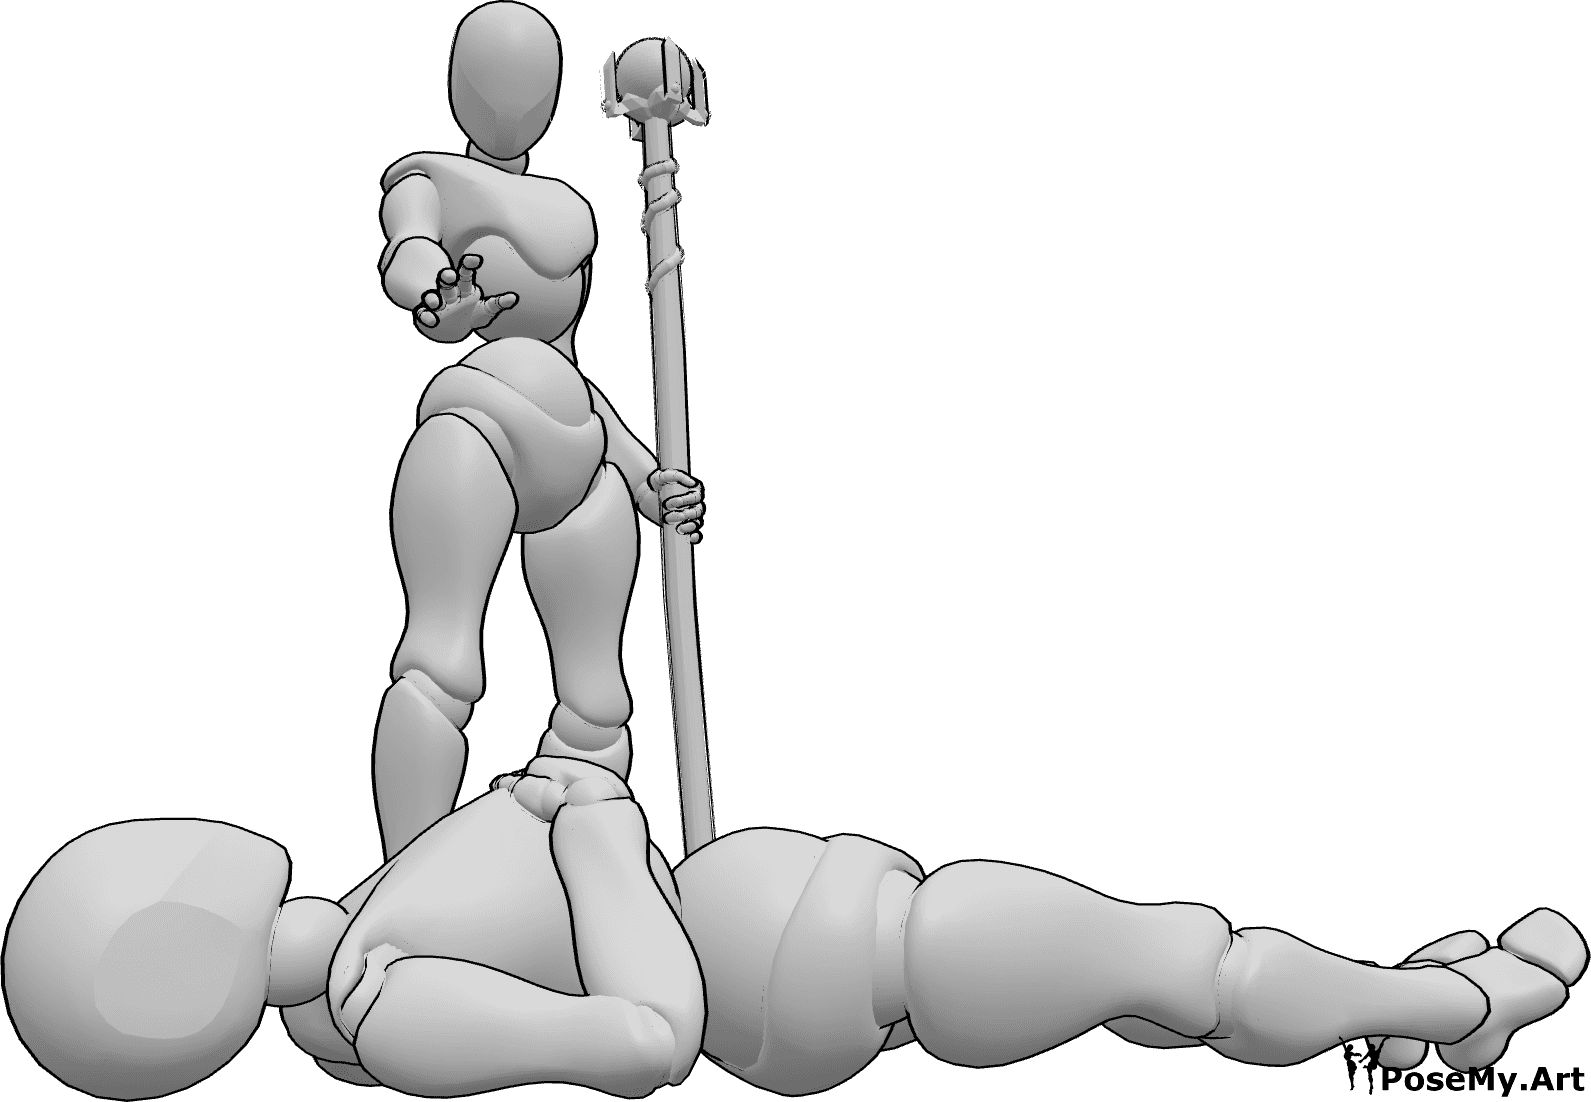 Posen-Referenz- Weiblicher Zauberer Heiler Pose - Weibliche Heilerin steht, hält einen Zauberstab und heilt die am Boden liegende Frau